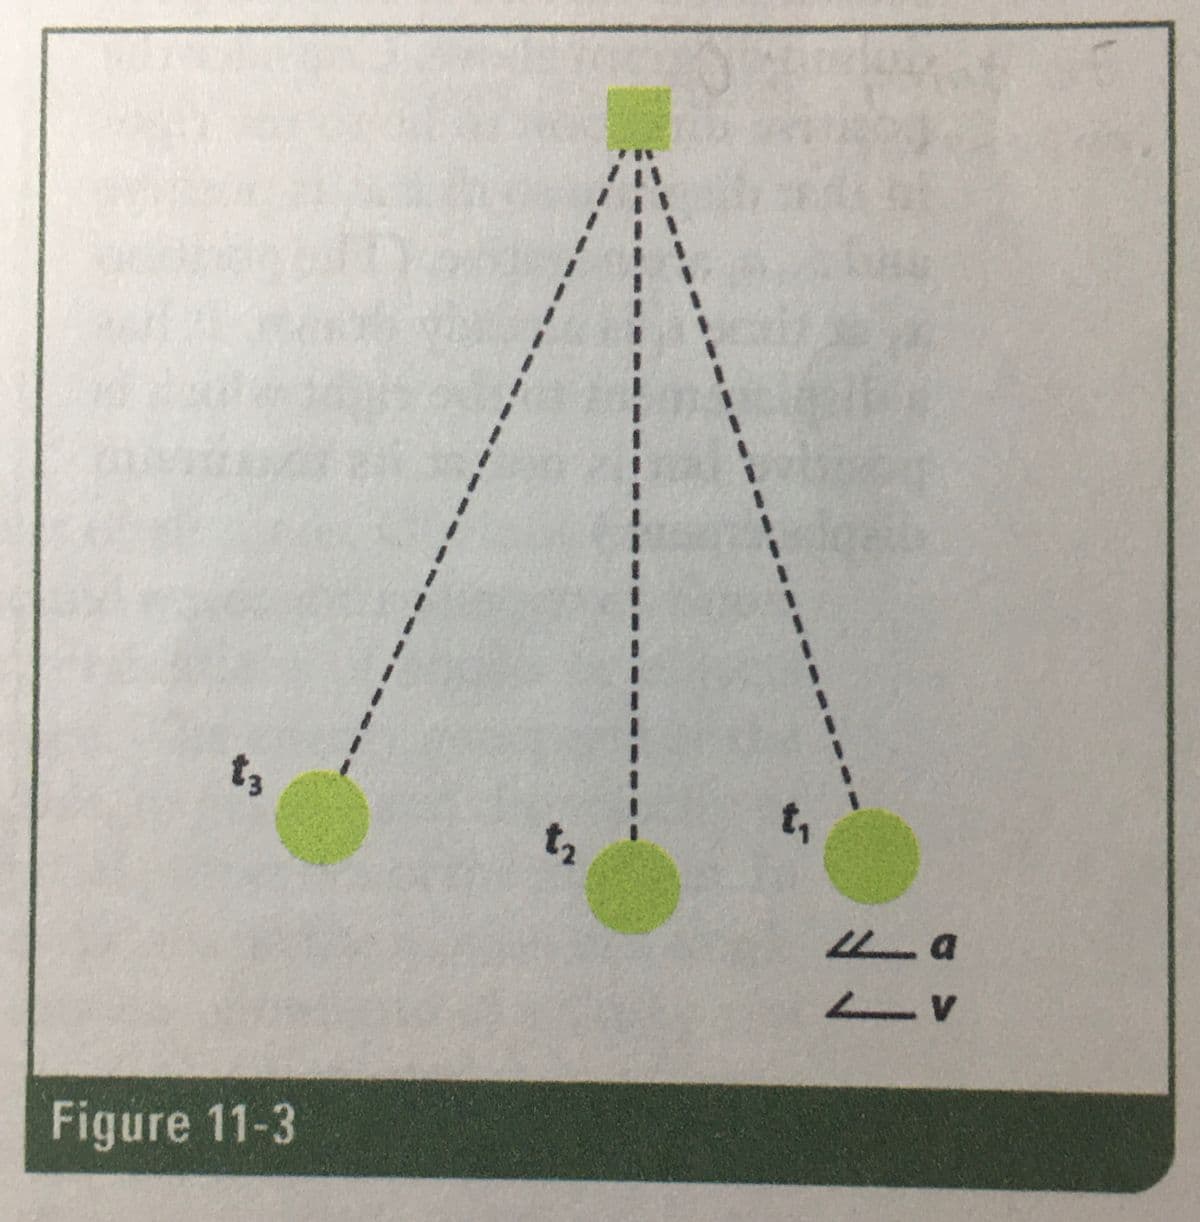 t,
t3
t2
Figure 11-3
